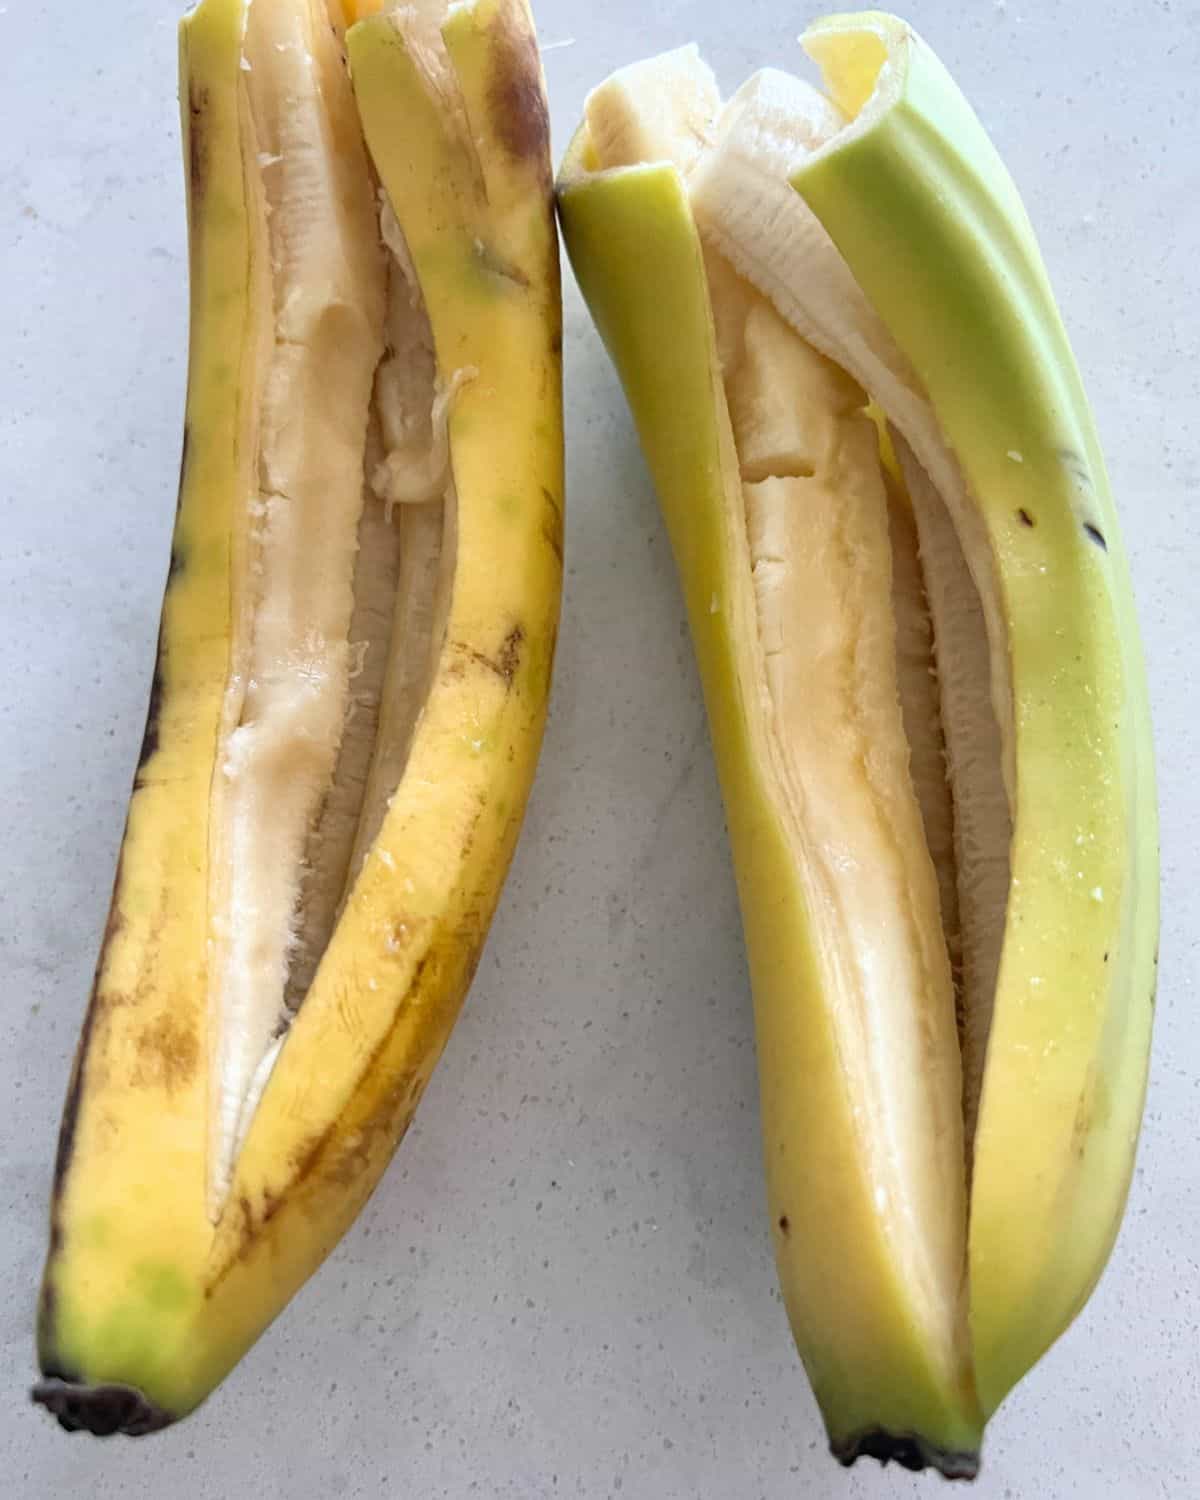 Slip open banana peels ready for toppings. 